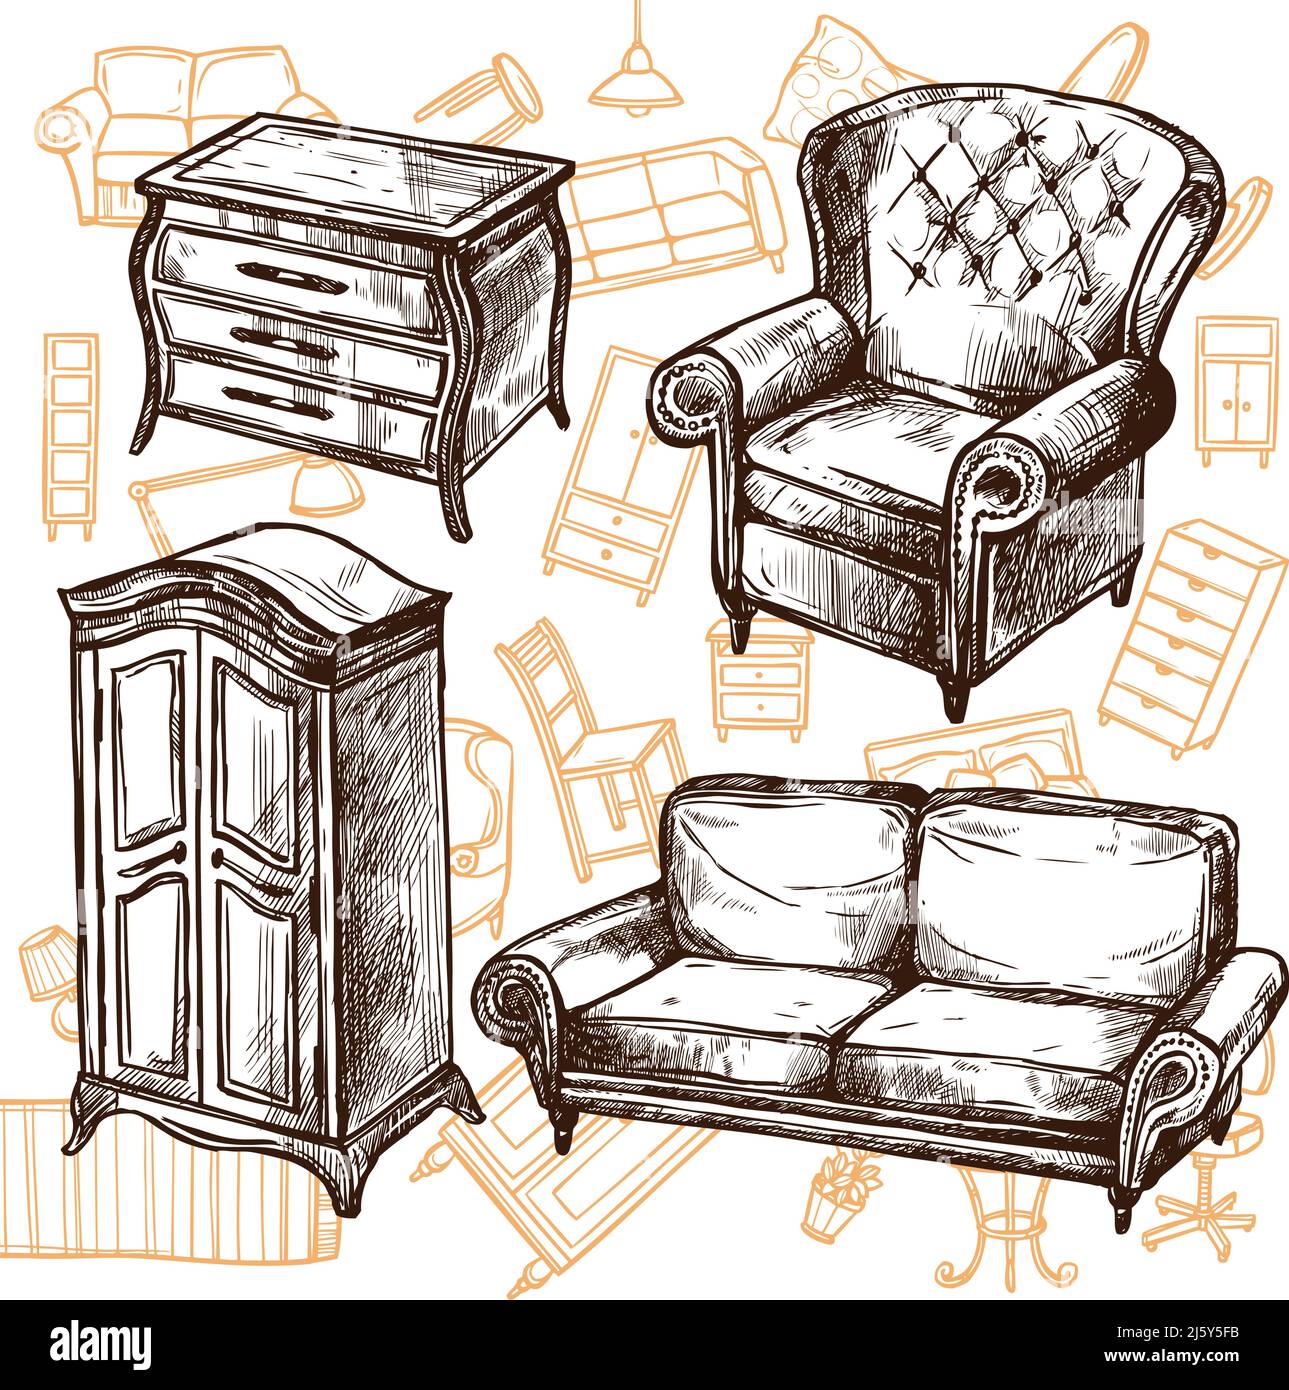 Meuble vintage chaise armoire de canapé et commode Doodle esquisse main illustration vectorielle de concept dessinée Illustration de Vecteur